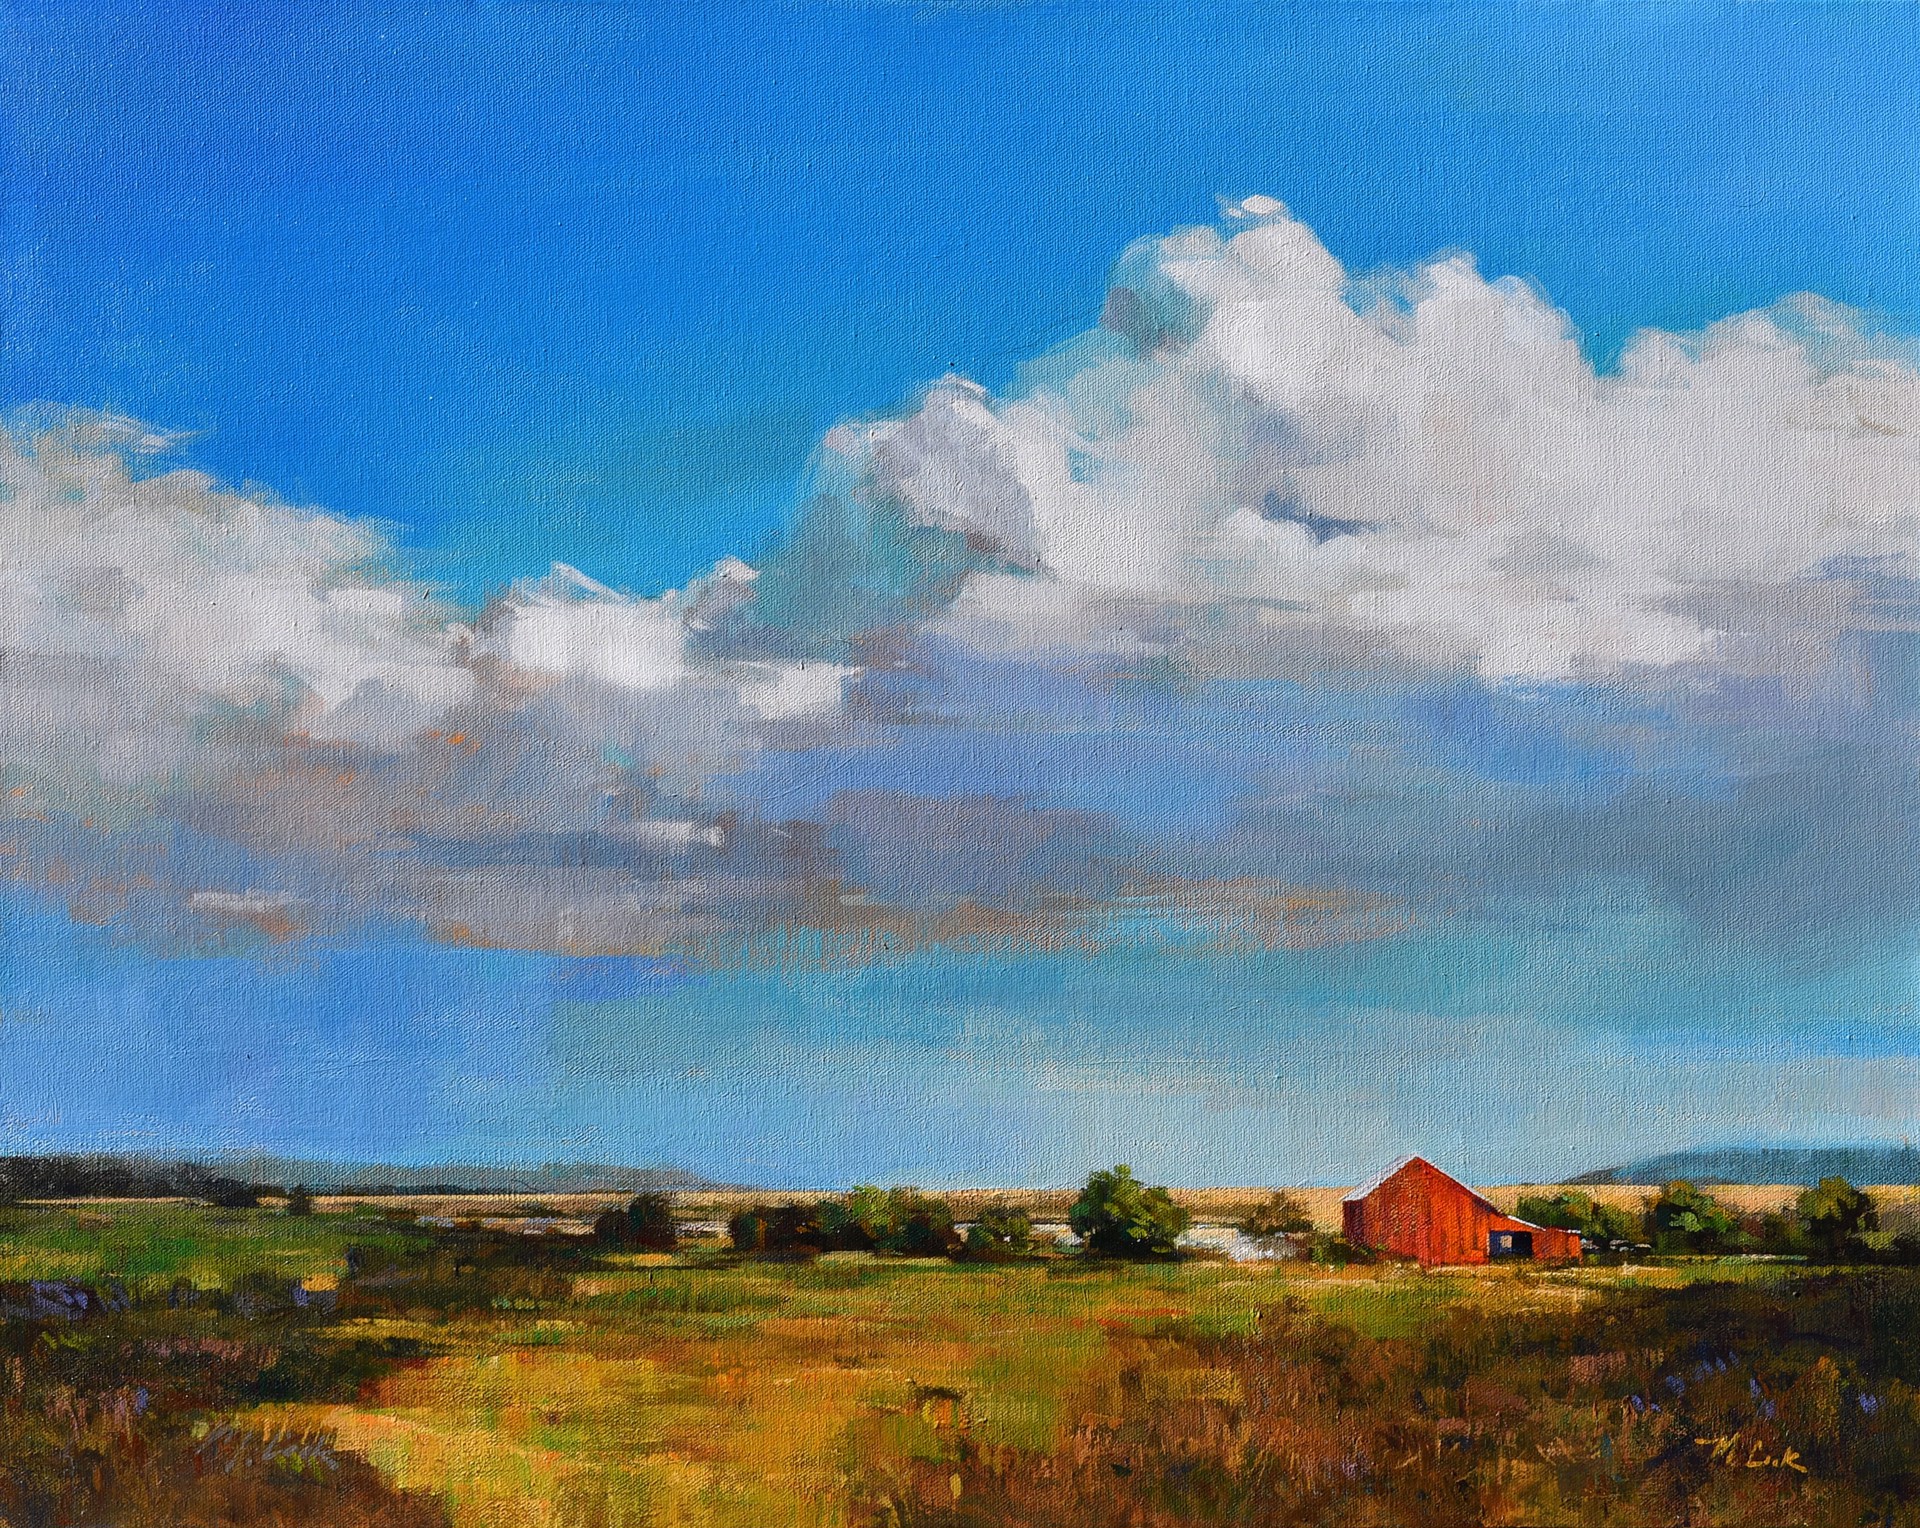 Prairie Pastoral by Mark Cook